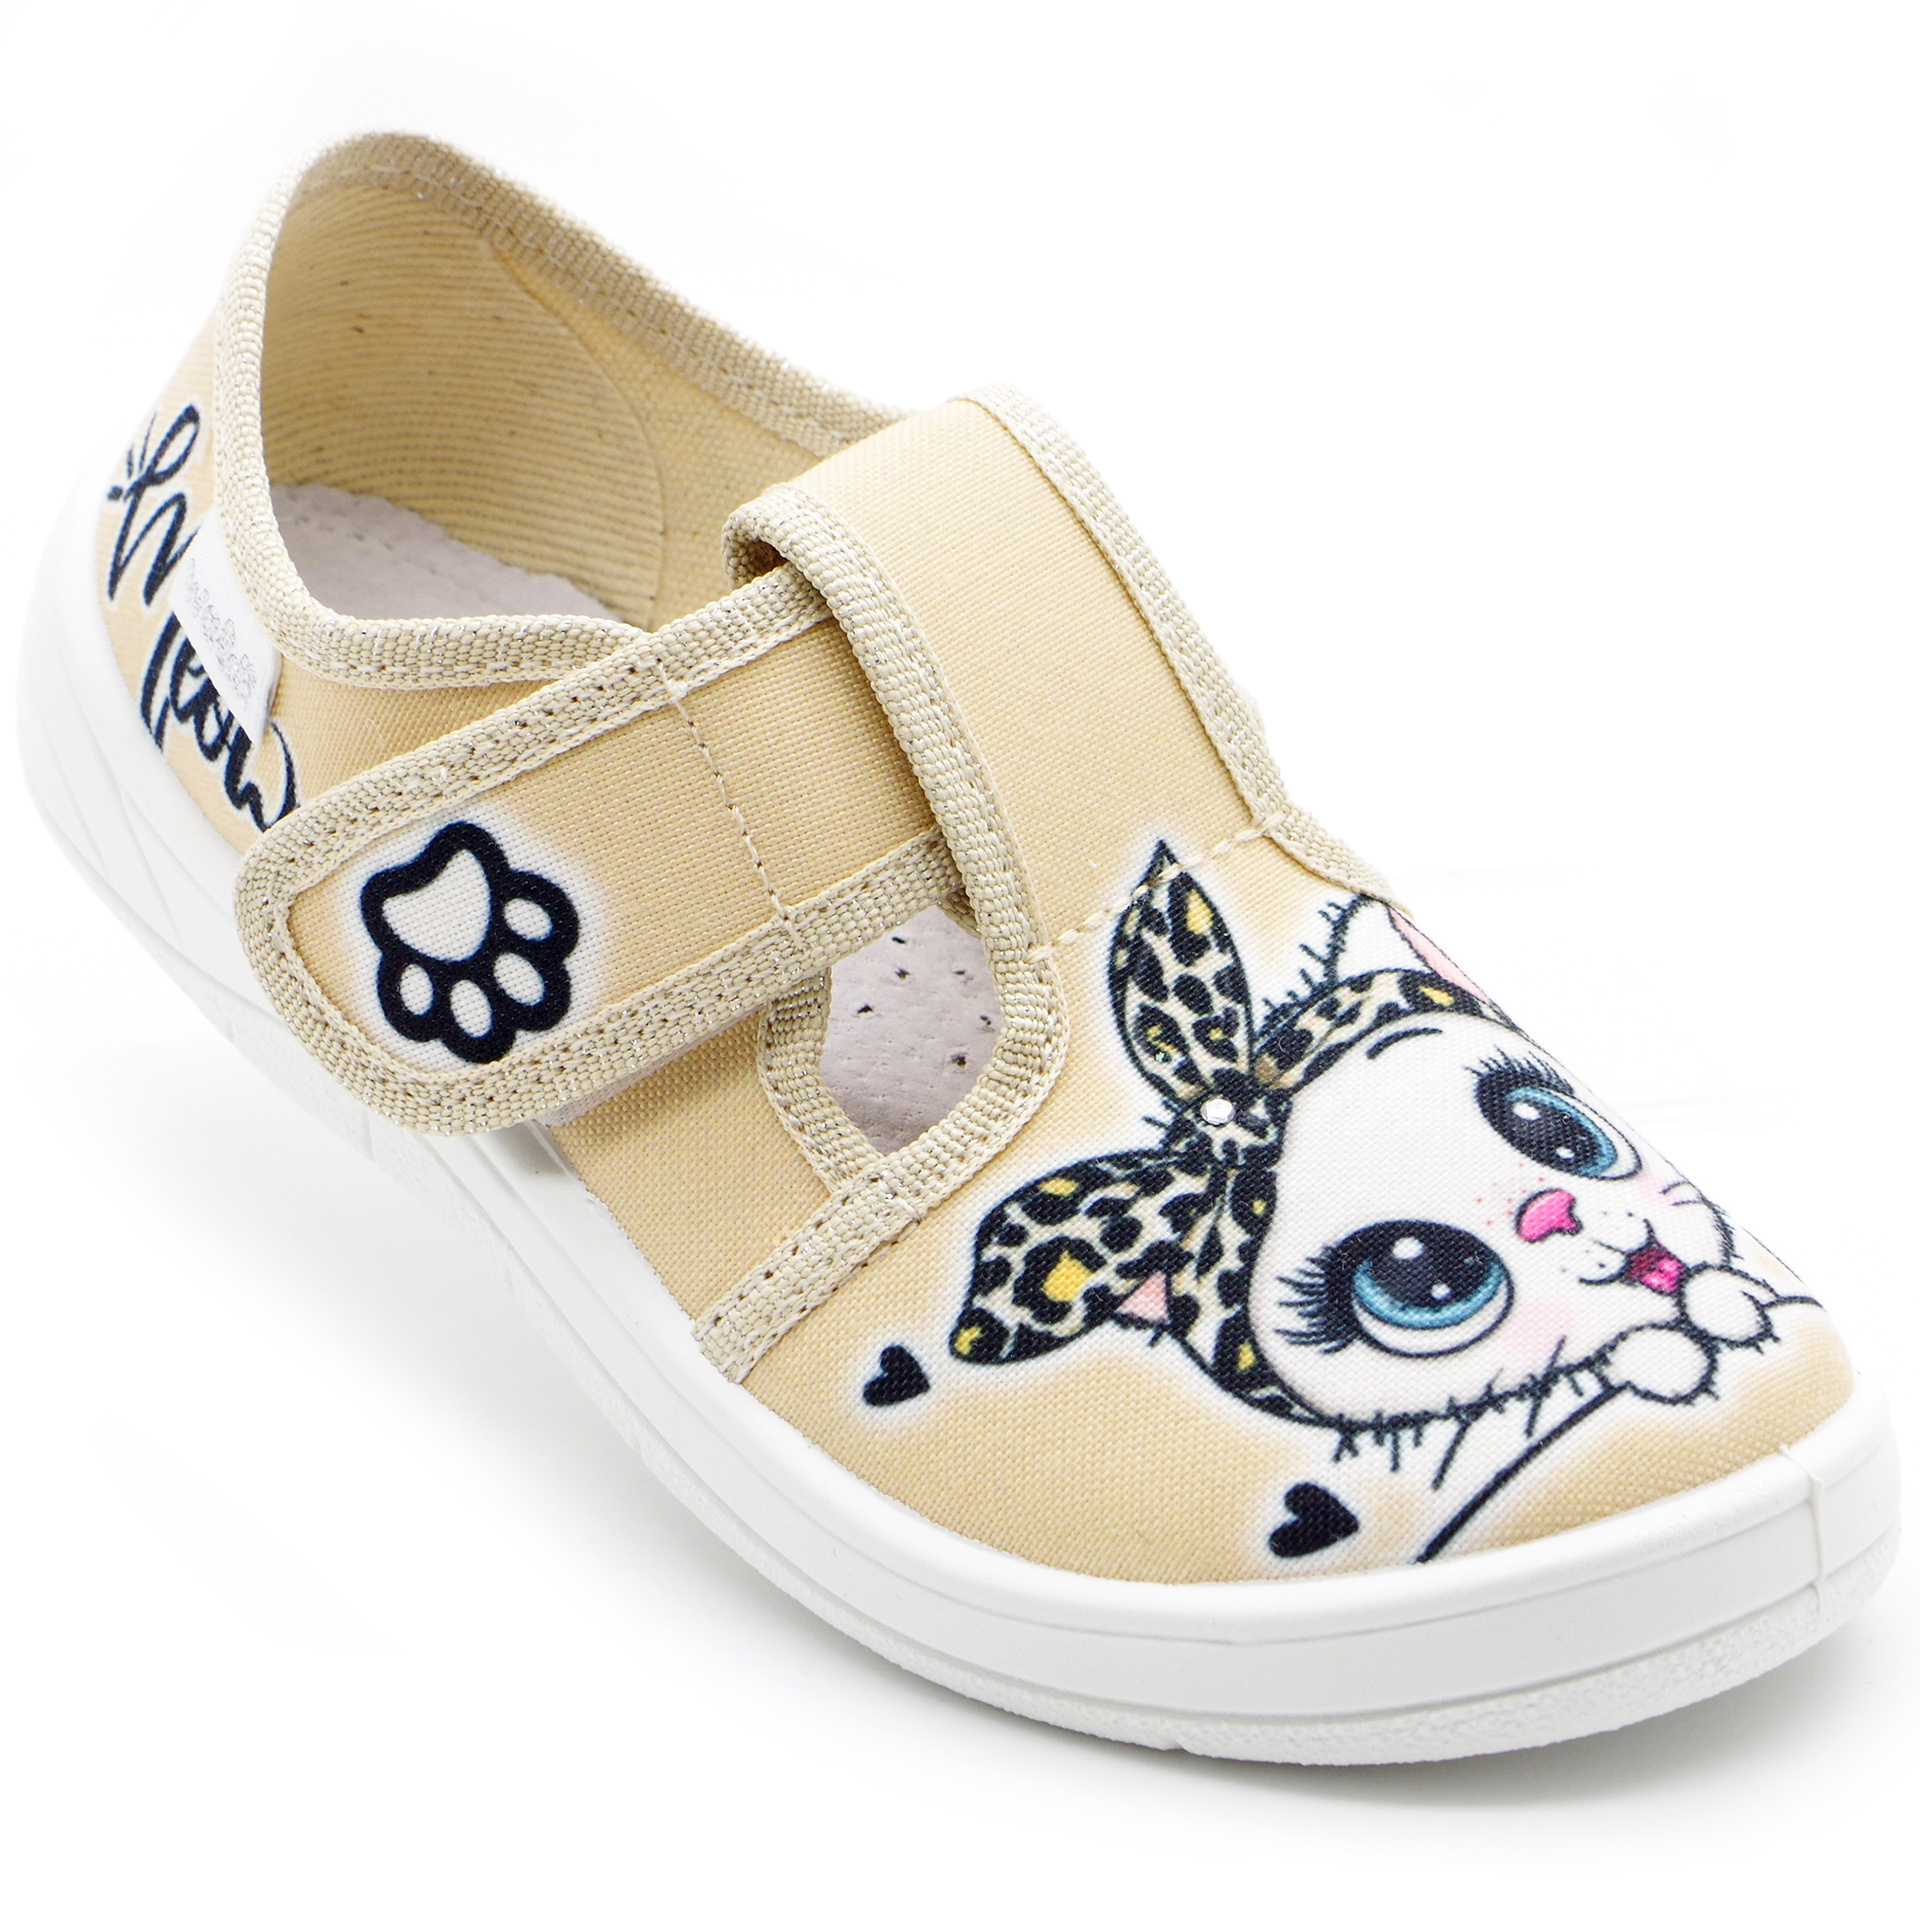 Текстильная обувь для девочек Тапочки Галя (2294) цвет Песочный 24-30 размеры – Sole Kids